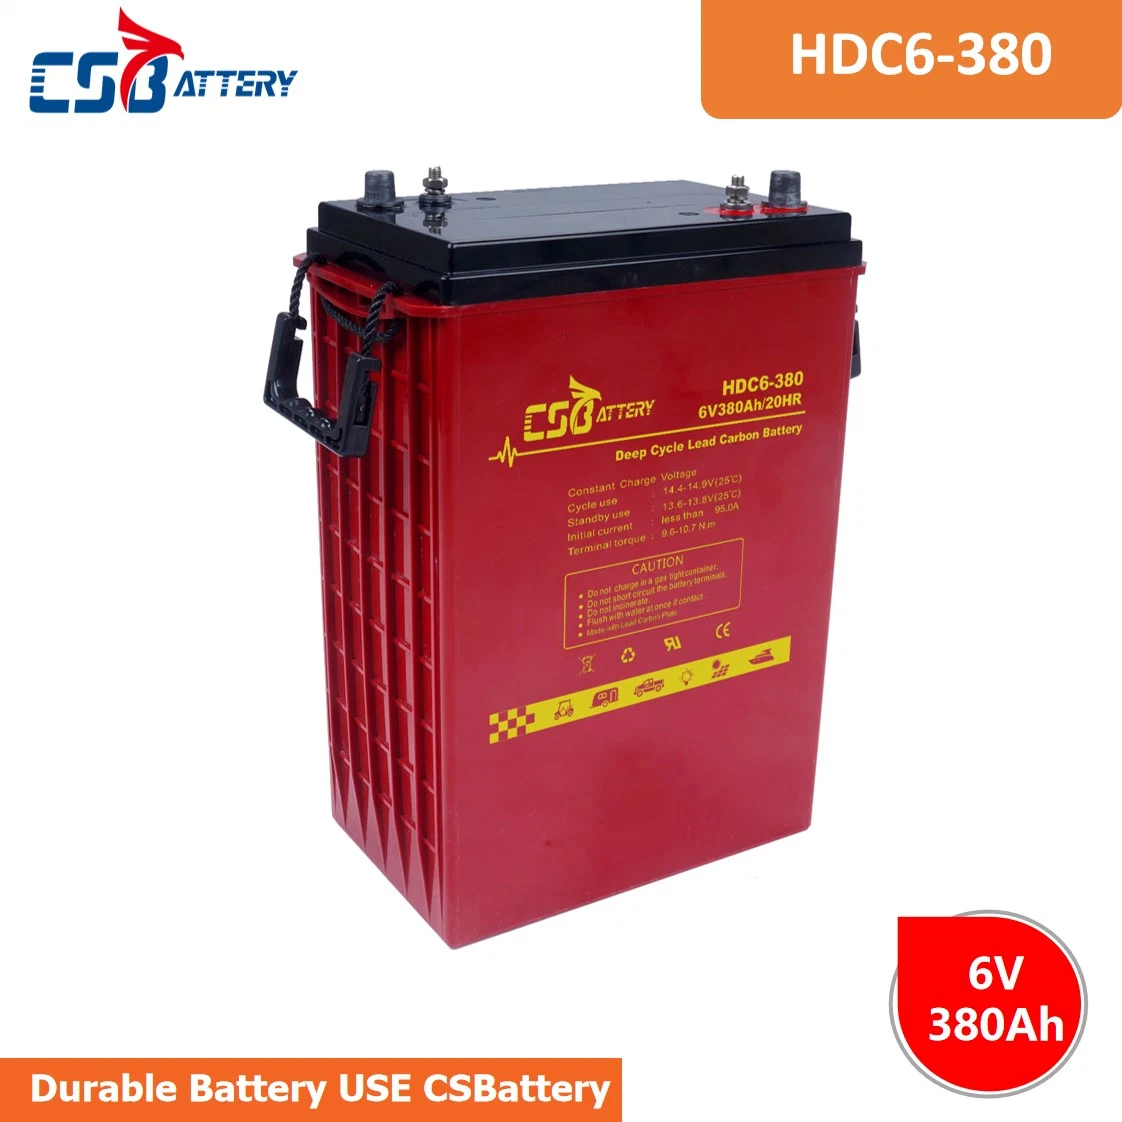 Csbattery 6V420ah Trojan Qualité Batterie au Carbone au Plomb à Cycle Profond pour Solaire/Onduleur/Outil Électrique/Trottinette Électrique/Vélo/Véhicule/CSR